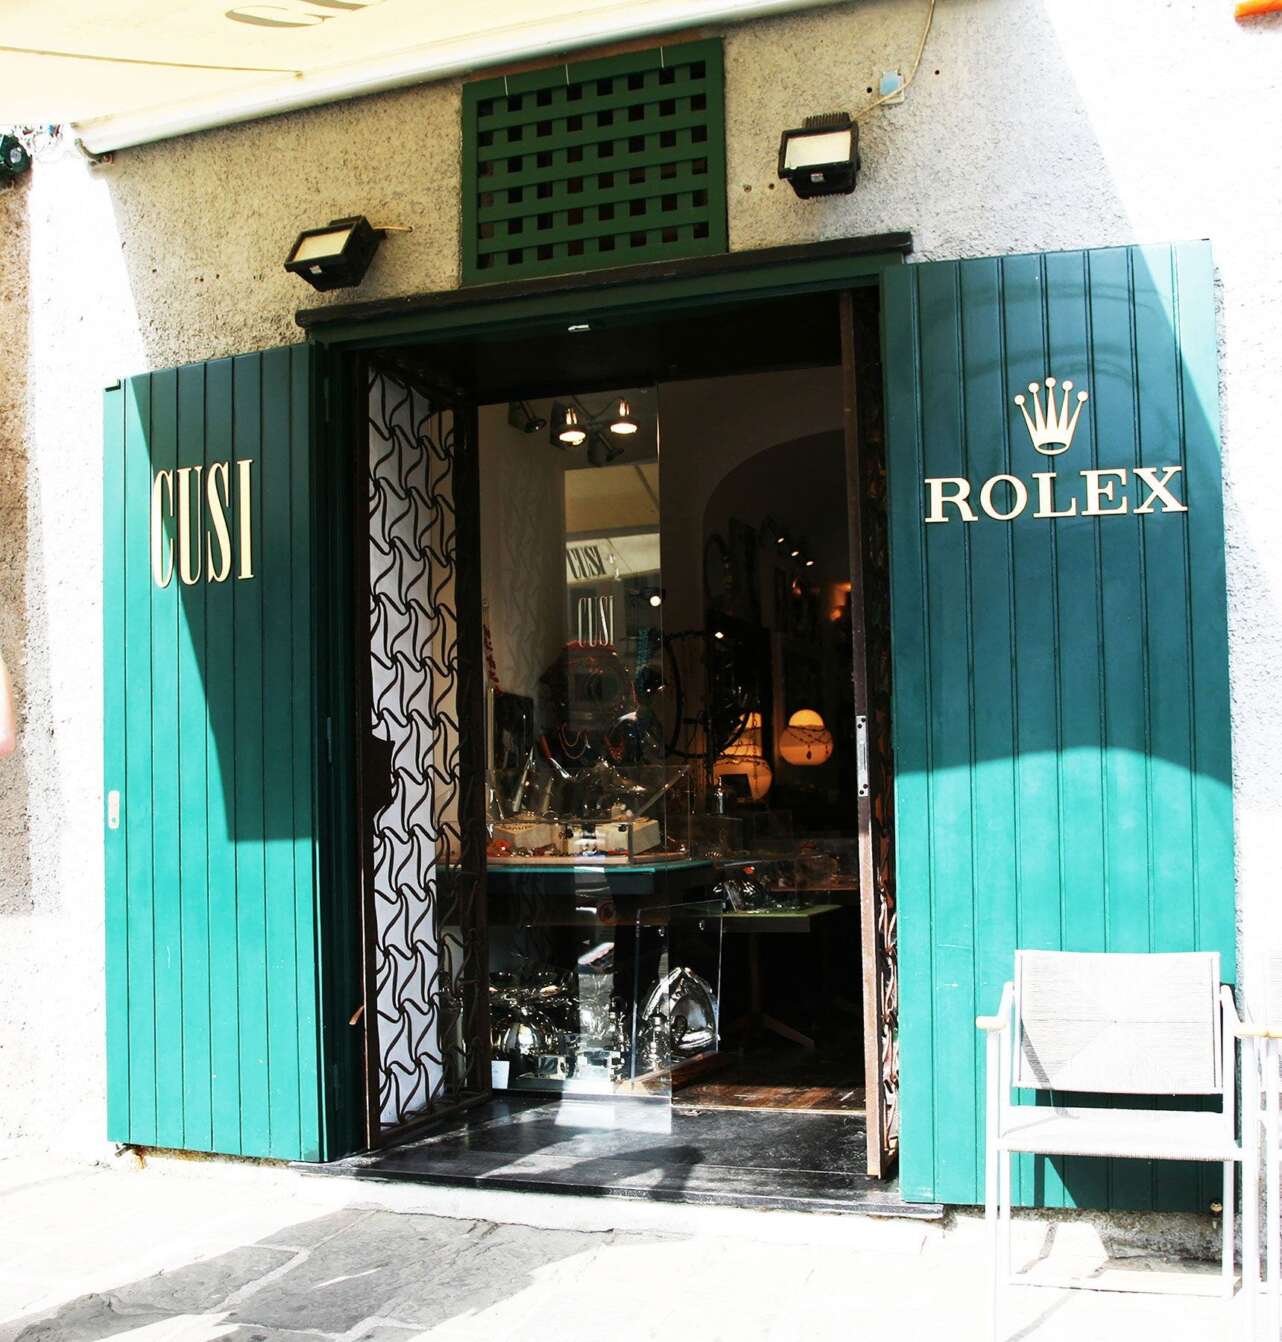 La cantidad de boutiques de lujo testifica el nivel adquisitivo de los visitantes de Portofino. Foto Manena Munar.